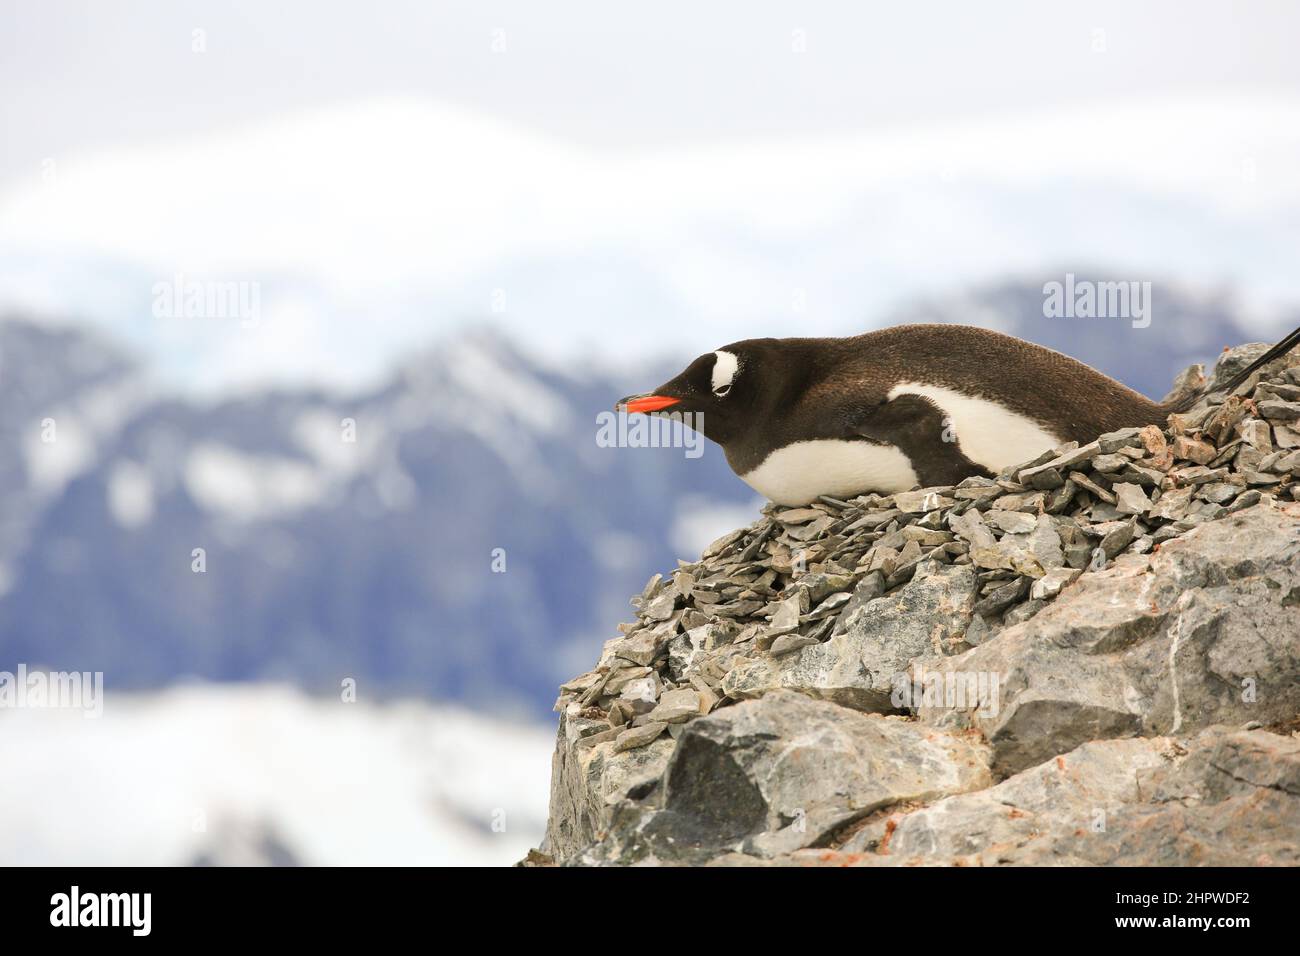 Le pingouin de Gentoo, nichant sur une pente raide et rocheuse, a une vue magnifique sur l'île de Danco, Antarctique. Banque D'Images